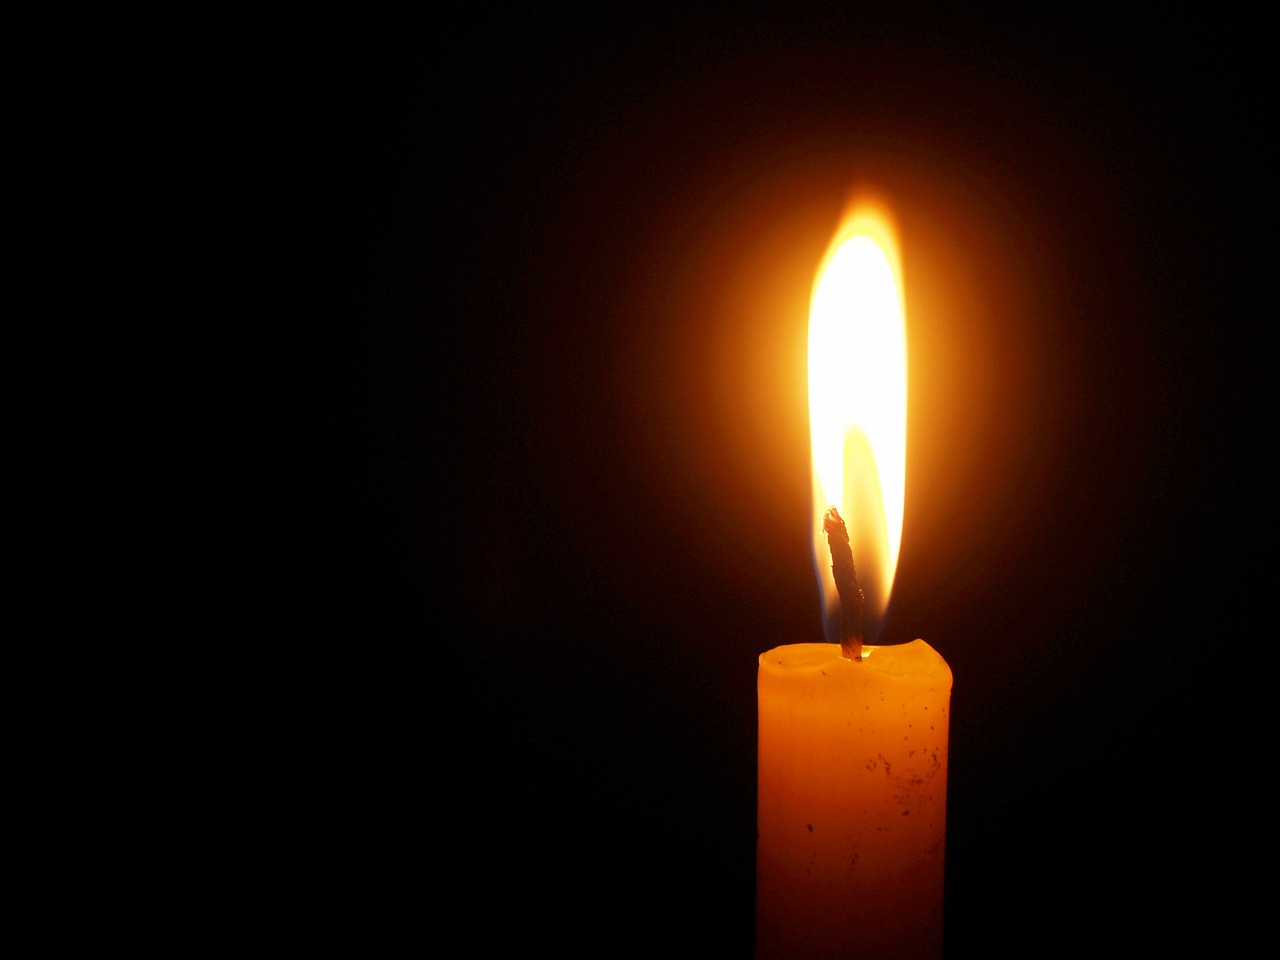 Έφυγε από την ζωή η Bάια Γραβάνη σε ηλικία 91 ετών – Η κηδεία θα τελεστεί σήμερα Δευτέρα 23 Ιανουαρίου